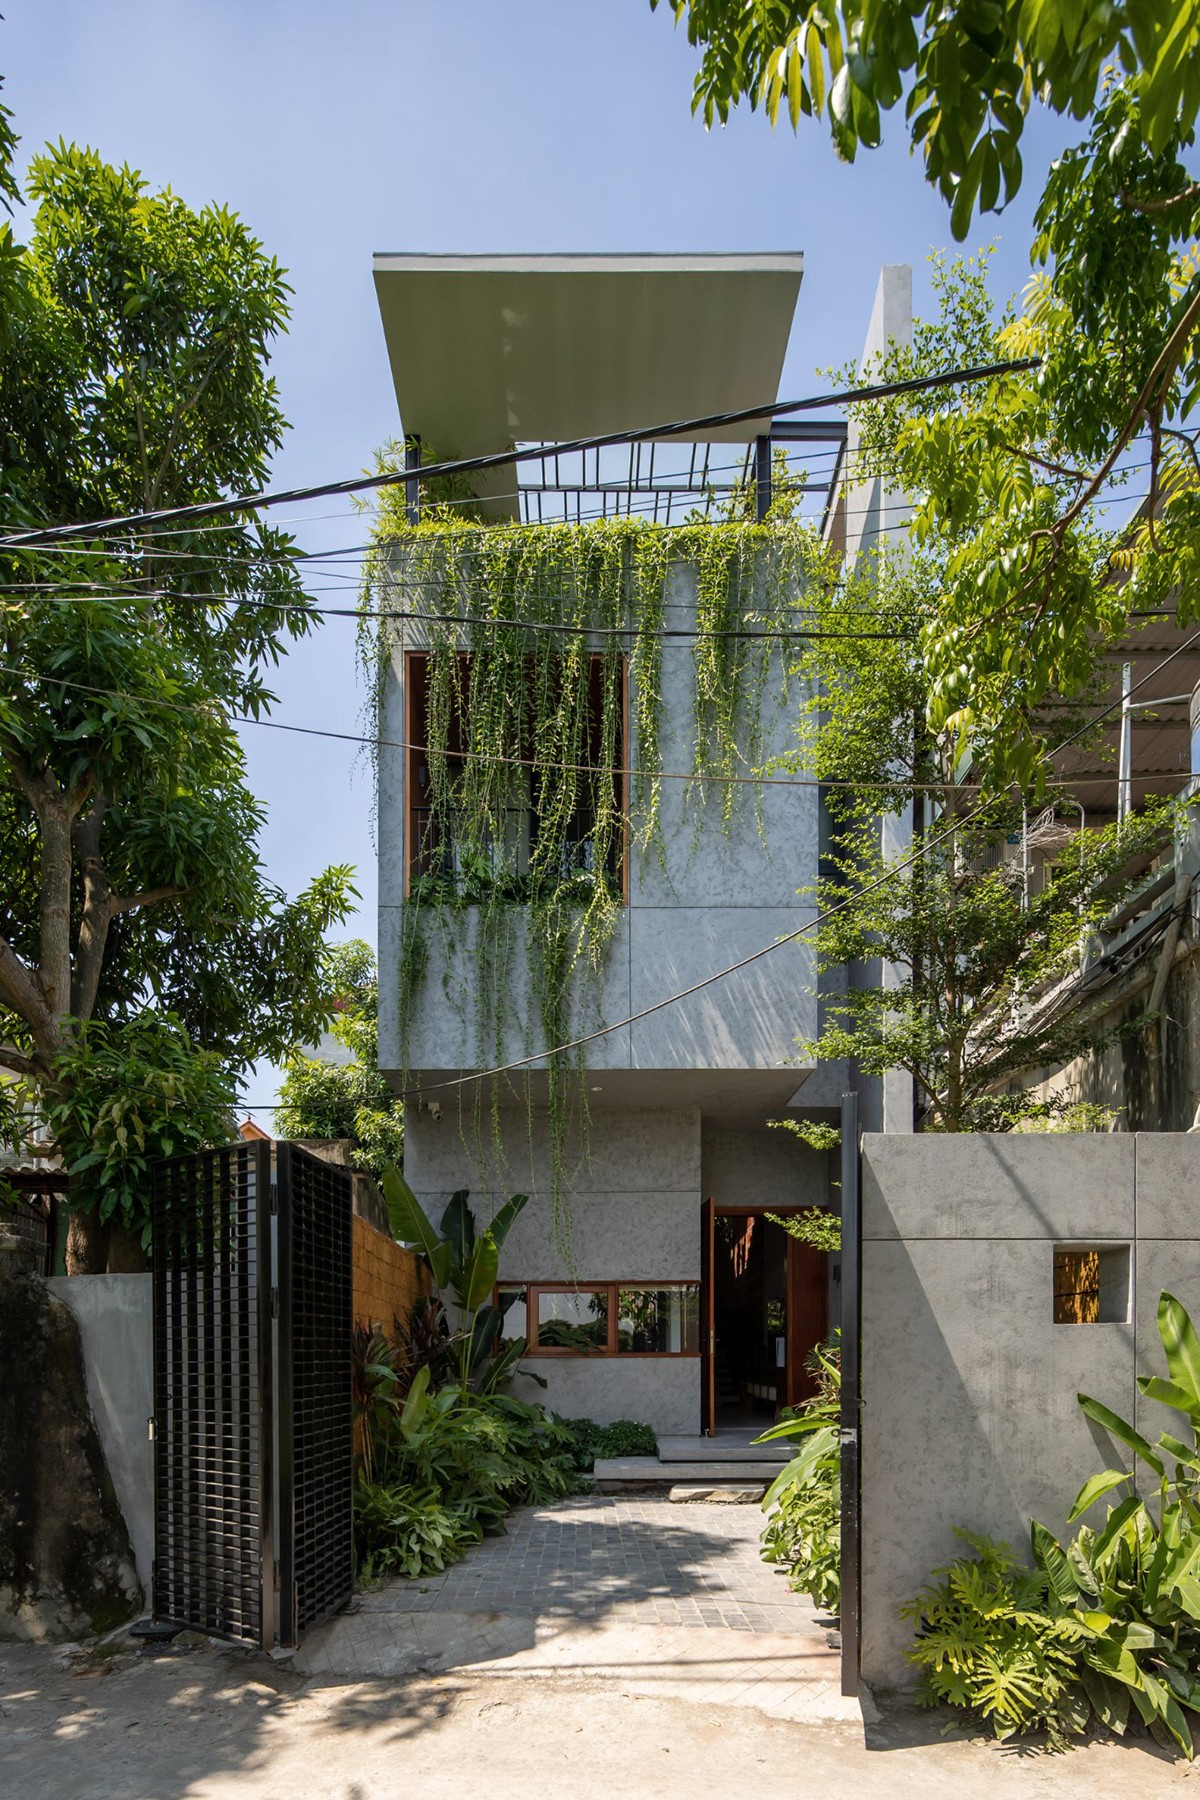 
Mặt tiền căn nhà tôn lên toàn cảnh khối kiến trúc độc đáo bên ngoài kết hợp với nhiều loại cây xanh bao quanh nhà
